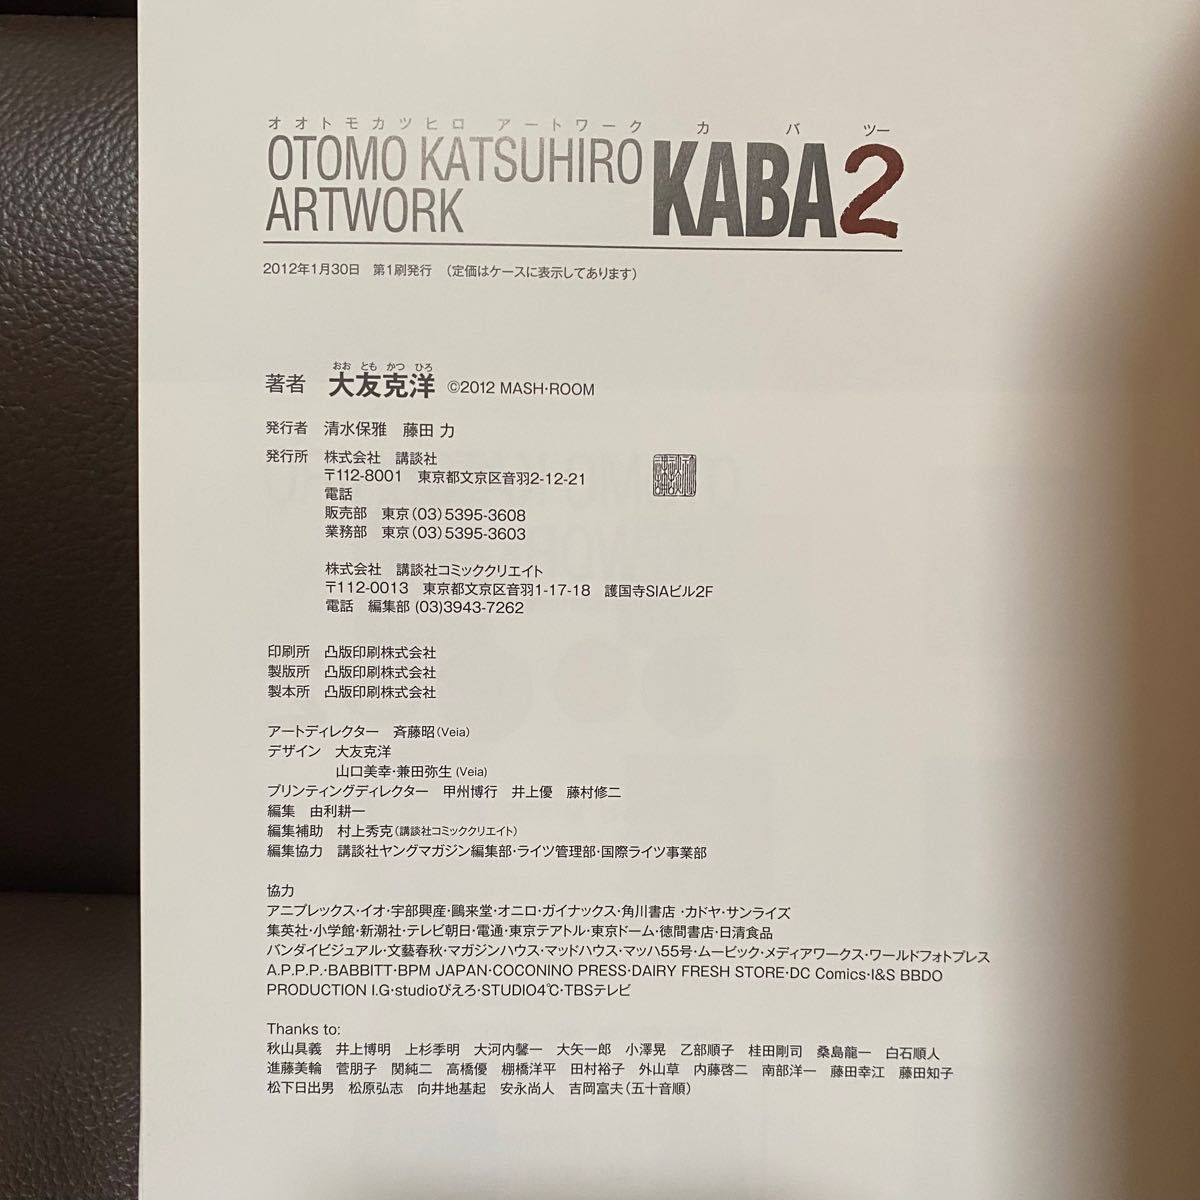 大友克洋 KABA2 OTOMO KATSUHIRO ARTWORK 画集 AKIRA 講談社 アートワーク イラスト集 初版